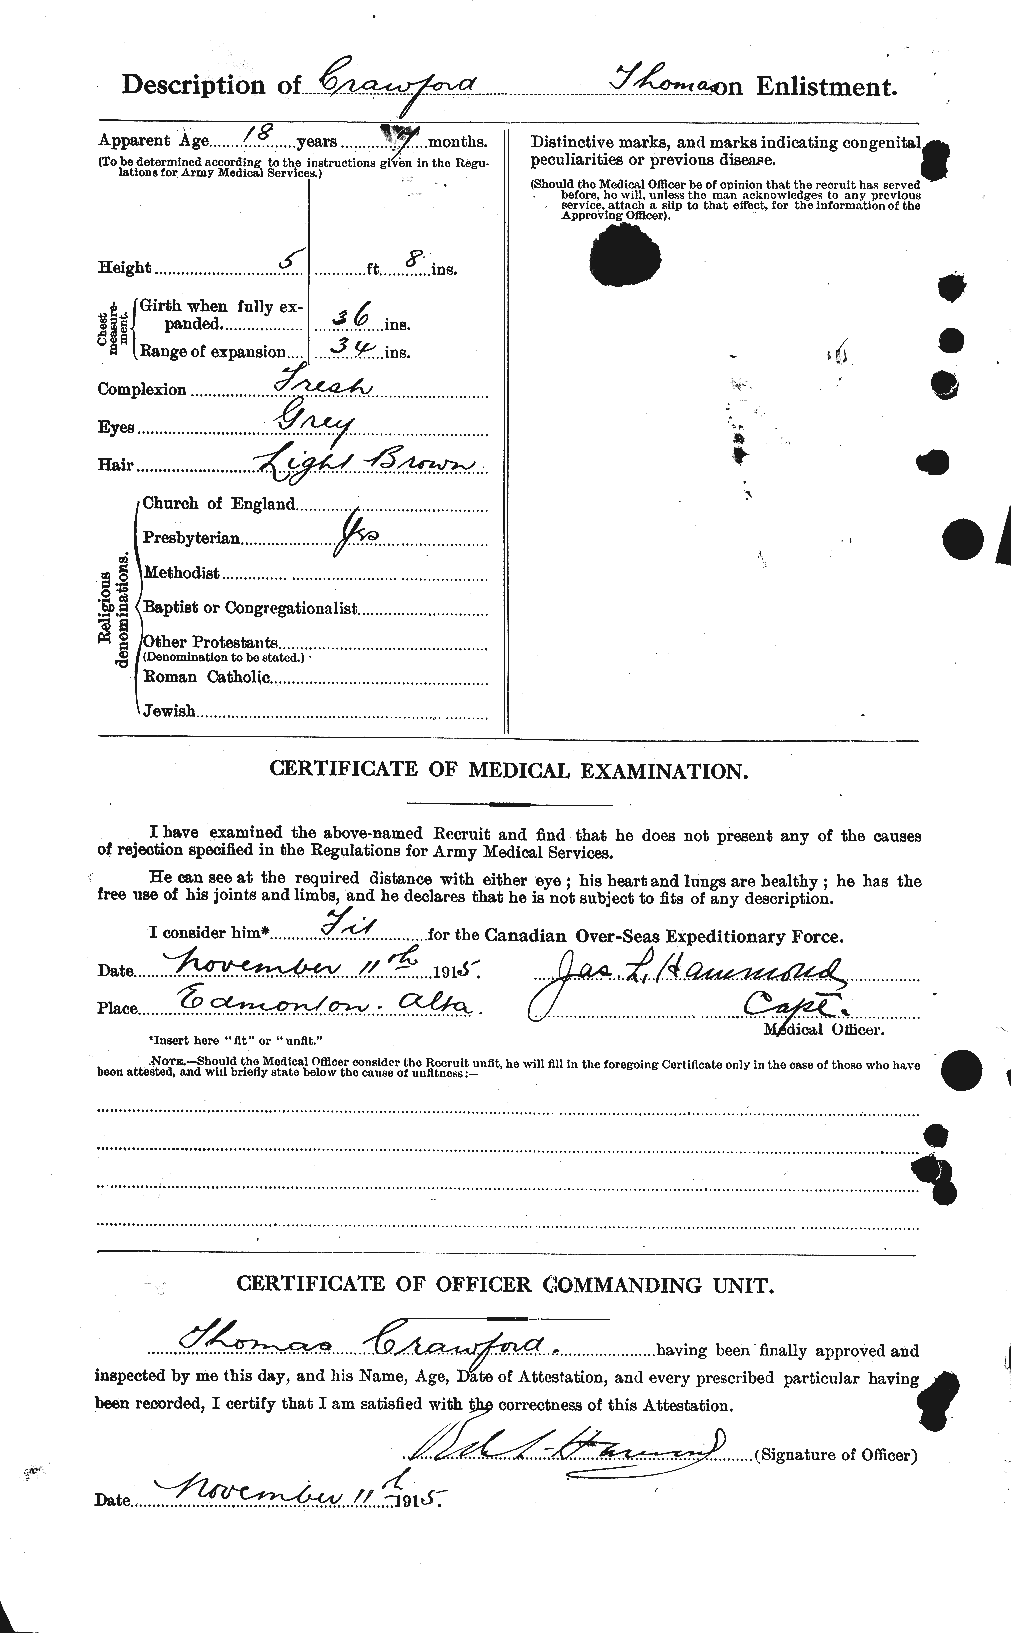 Dossiers du Personnel de la Première Guerre mondiale - CEC 061357b